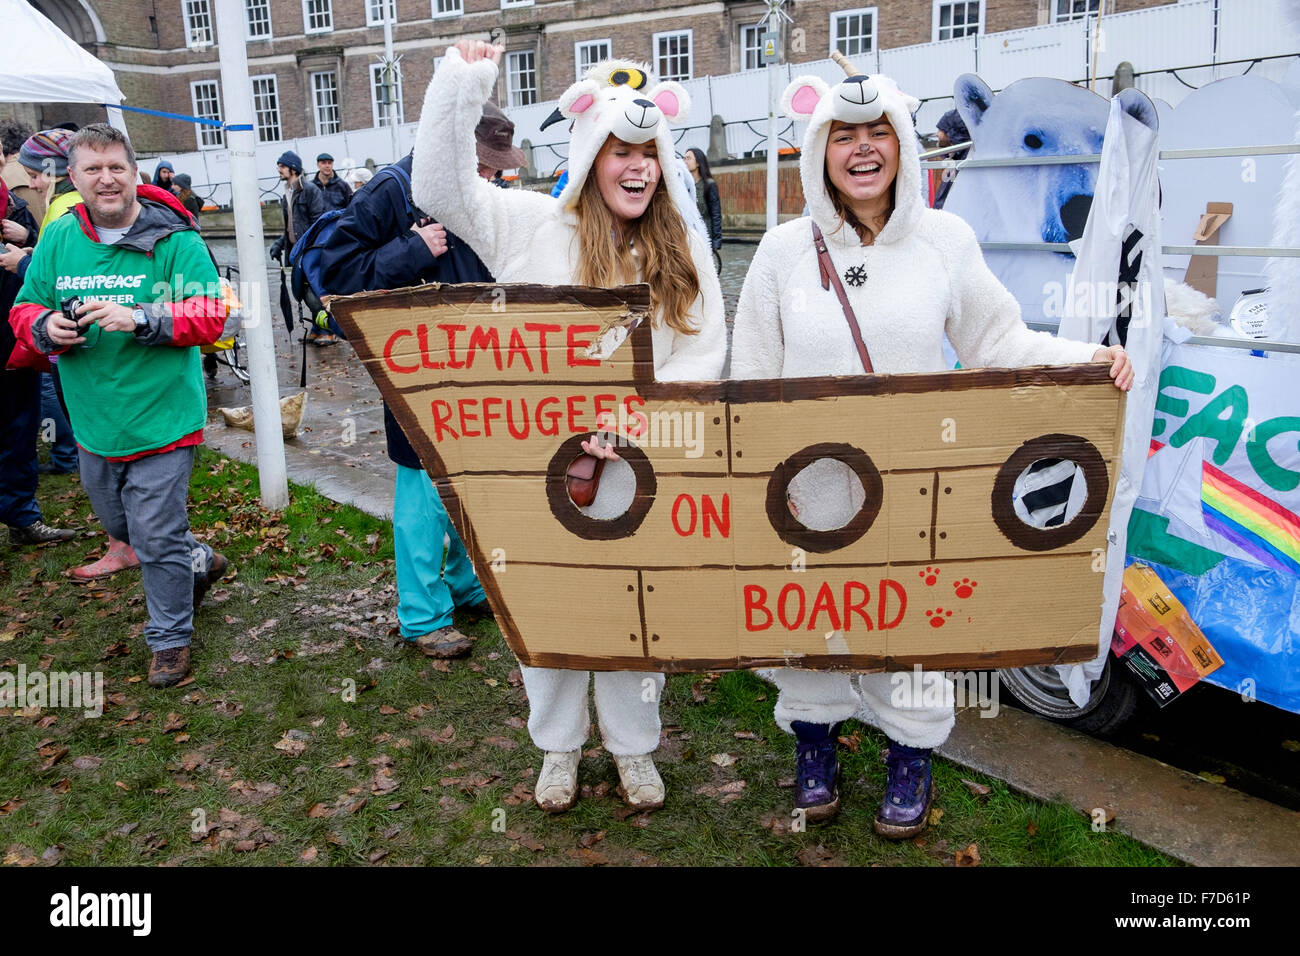 Bristol, UK, le 29 novembre, 2015. Les manifestants déguisés en ours polaires sont illustrés à la fin de l'action de peuples Bristols sur le changement climatique de protestation. Les dirigeants du monde se sont réunis à Paris le 30 novembre pour le sommet des Nations Unies sur le climat (COP21) Crédit : lynchpics/Alamy Live News Banque D'Images